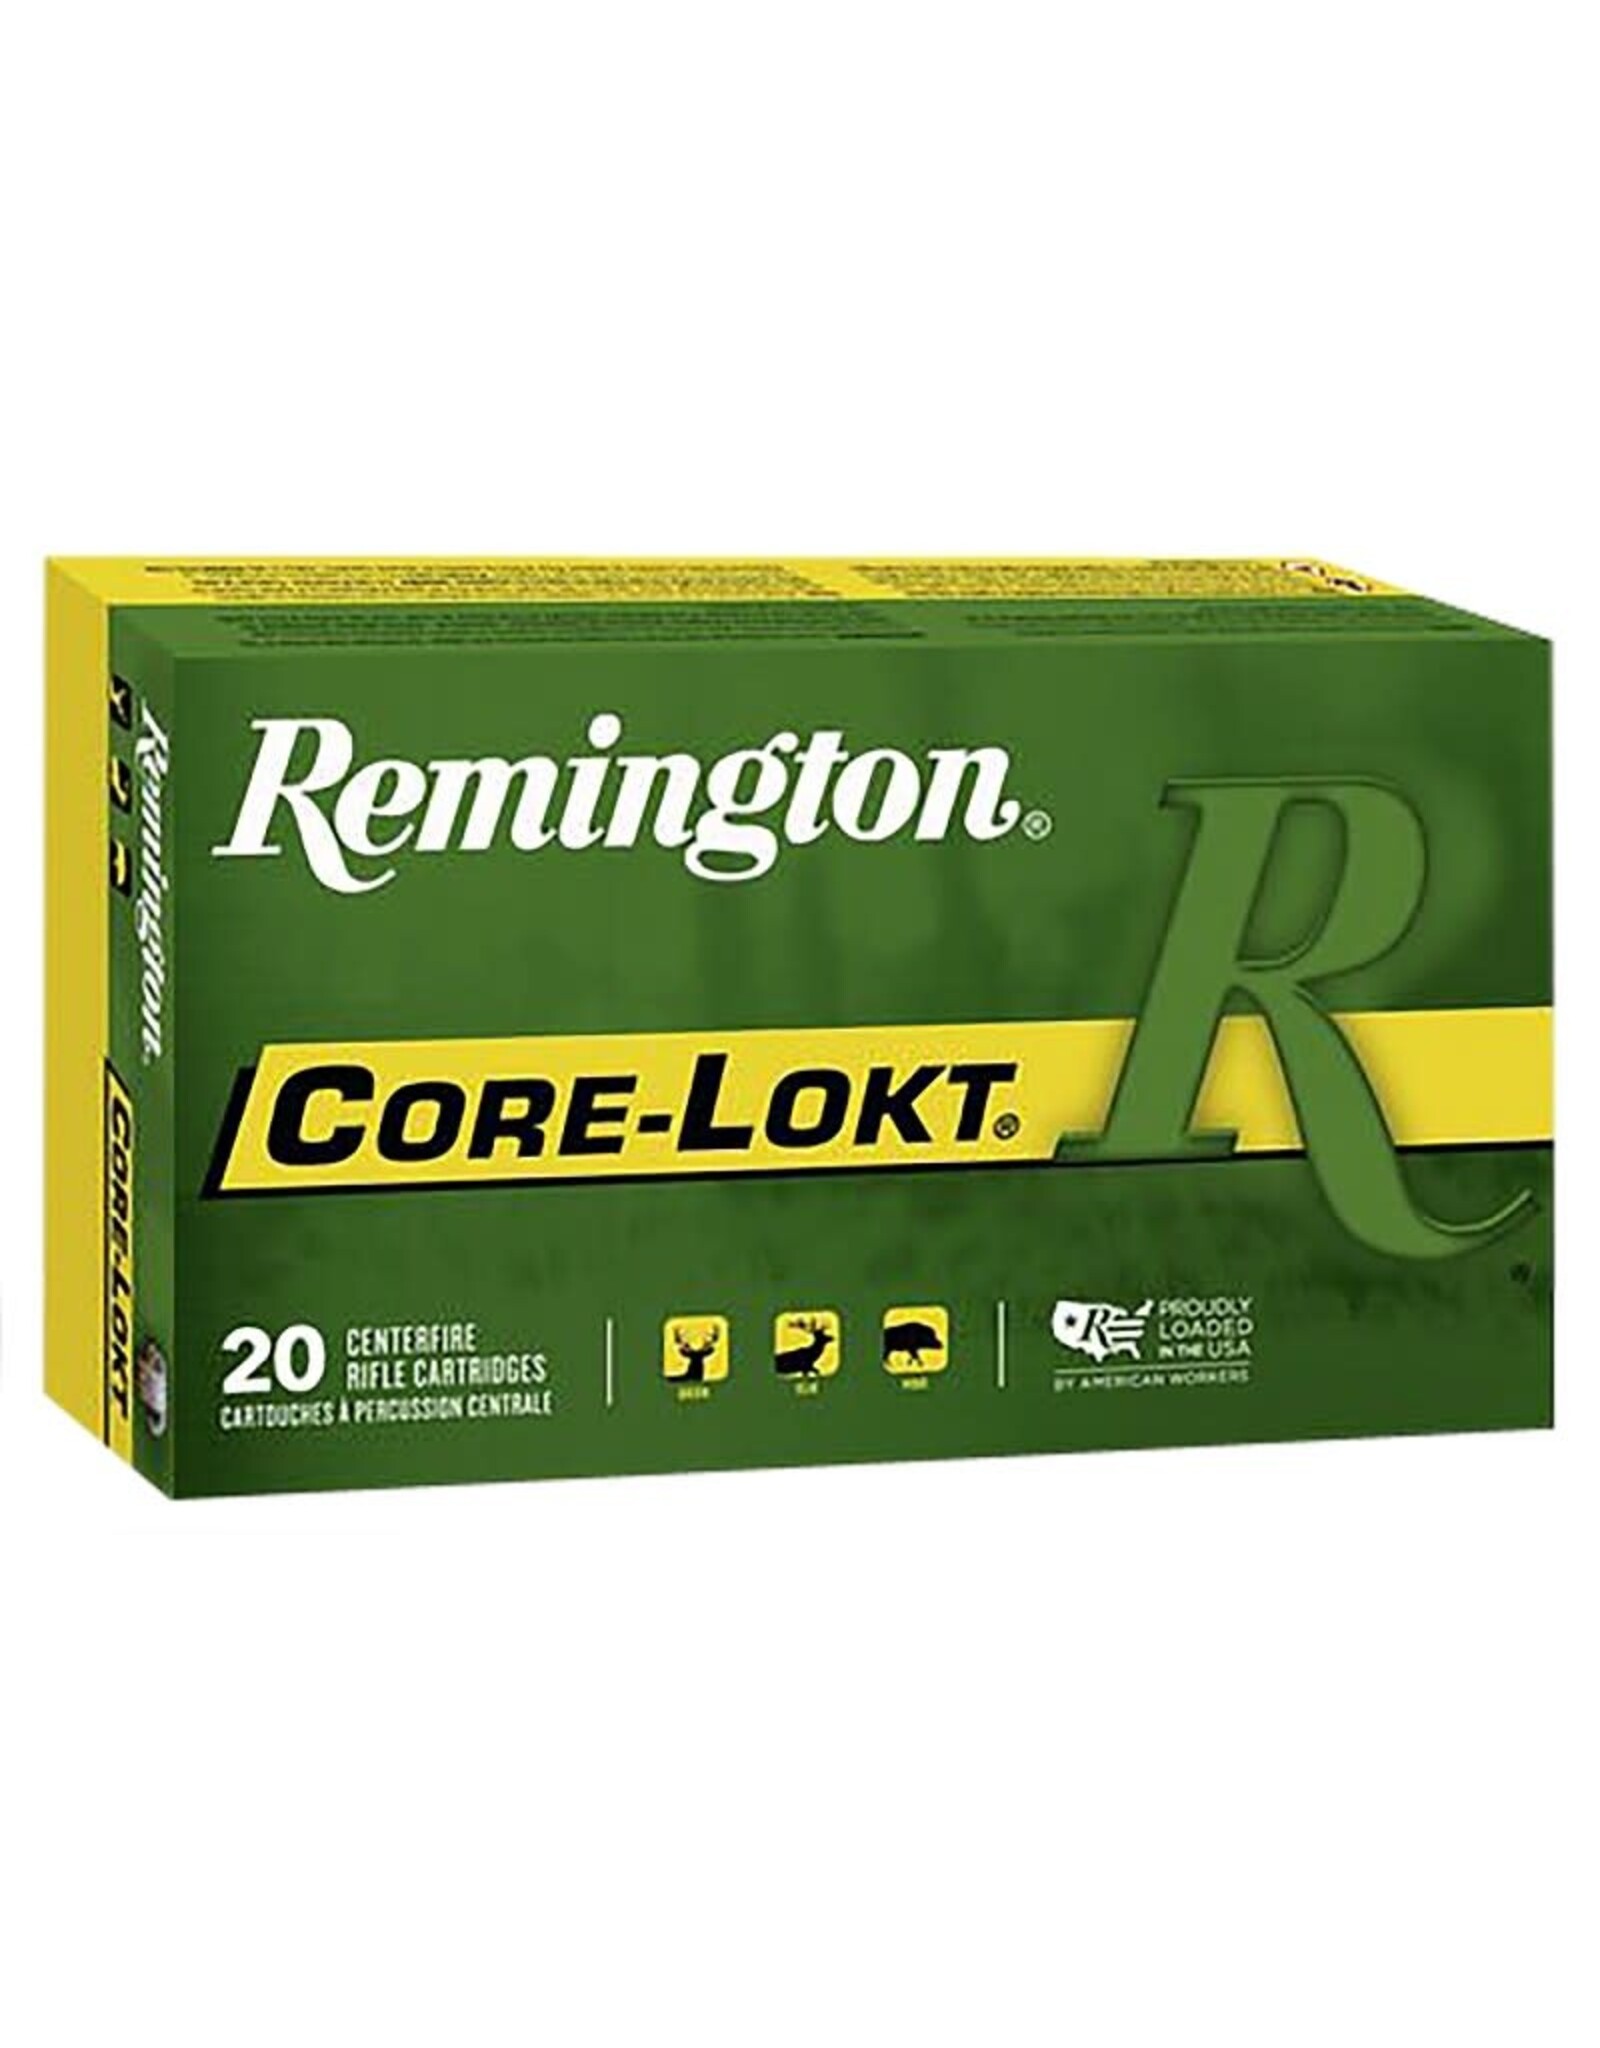 REMINGTON AMMUNITION Remington Core-Lokt 7mm Rem Mag 175 Gr PSP 2860 FPS - 20 Count